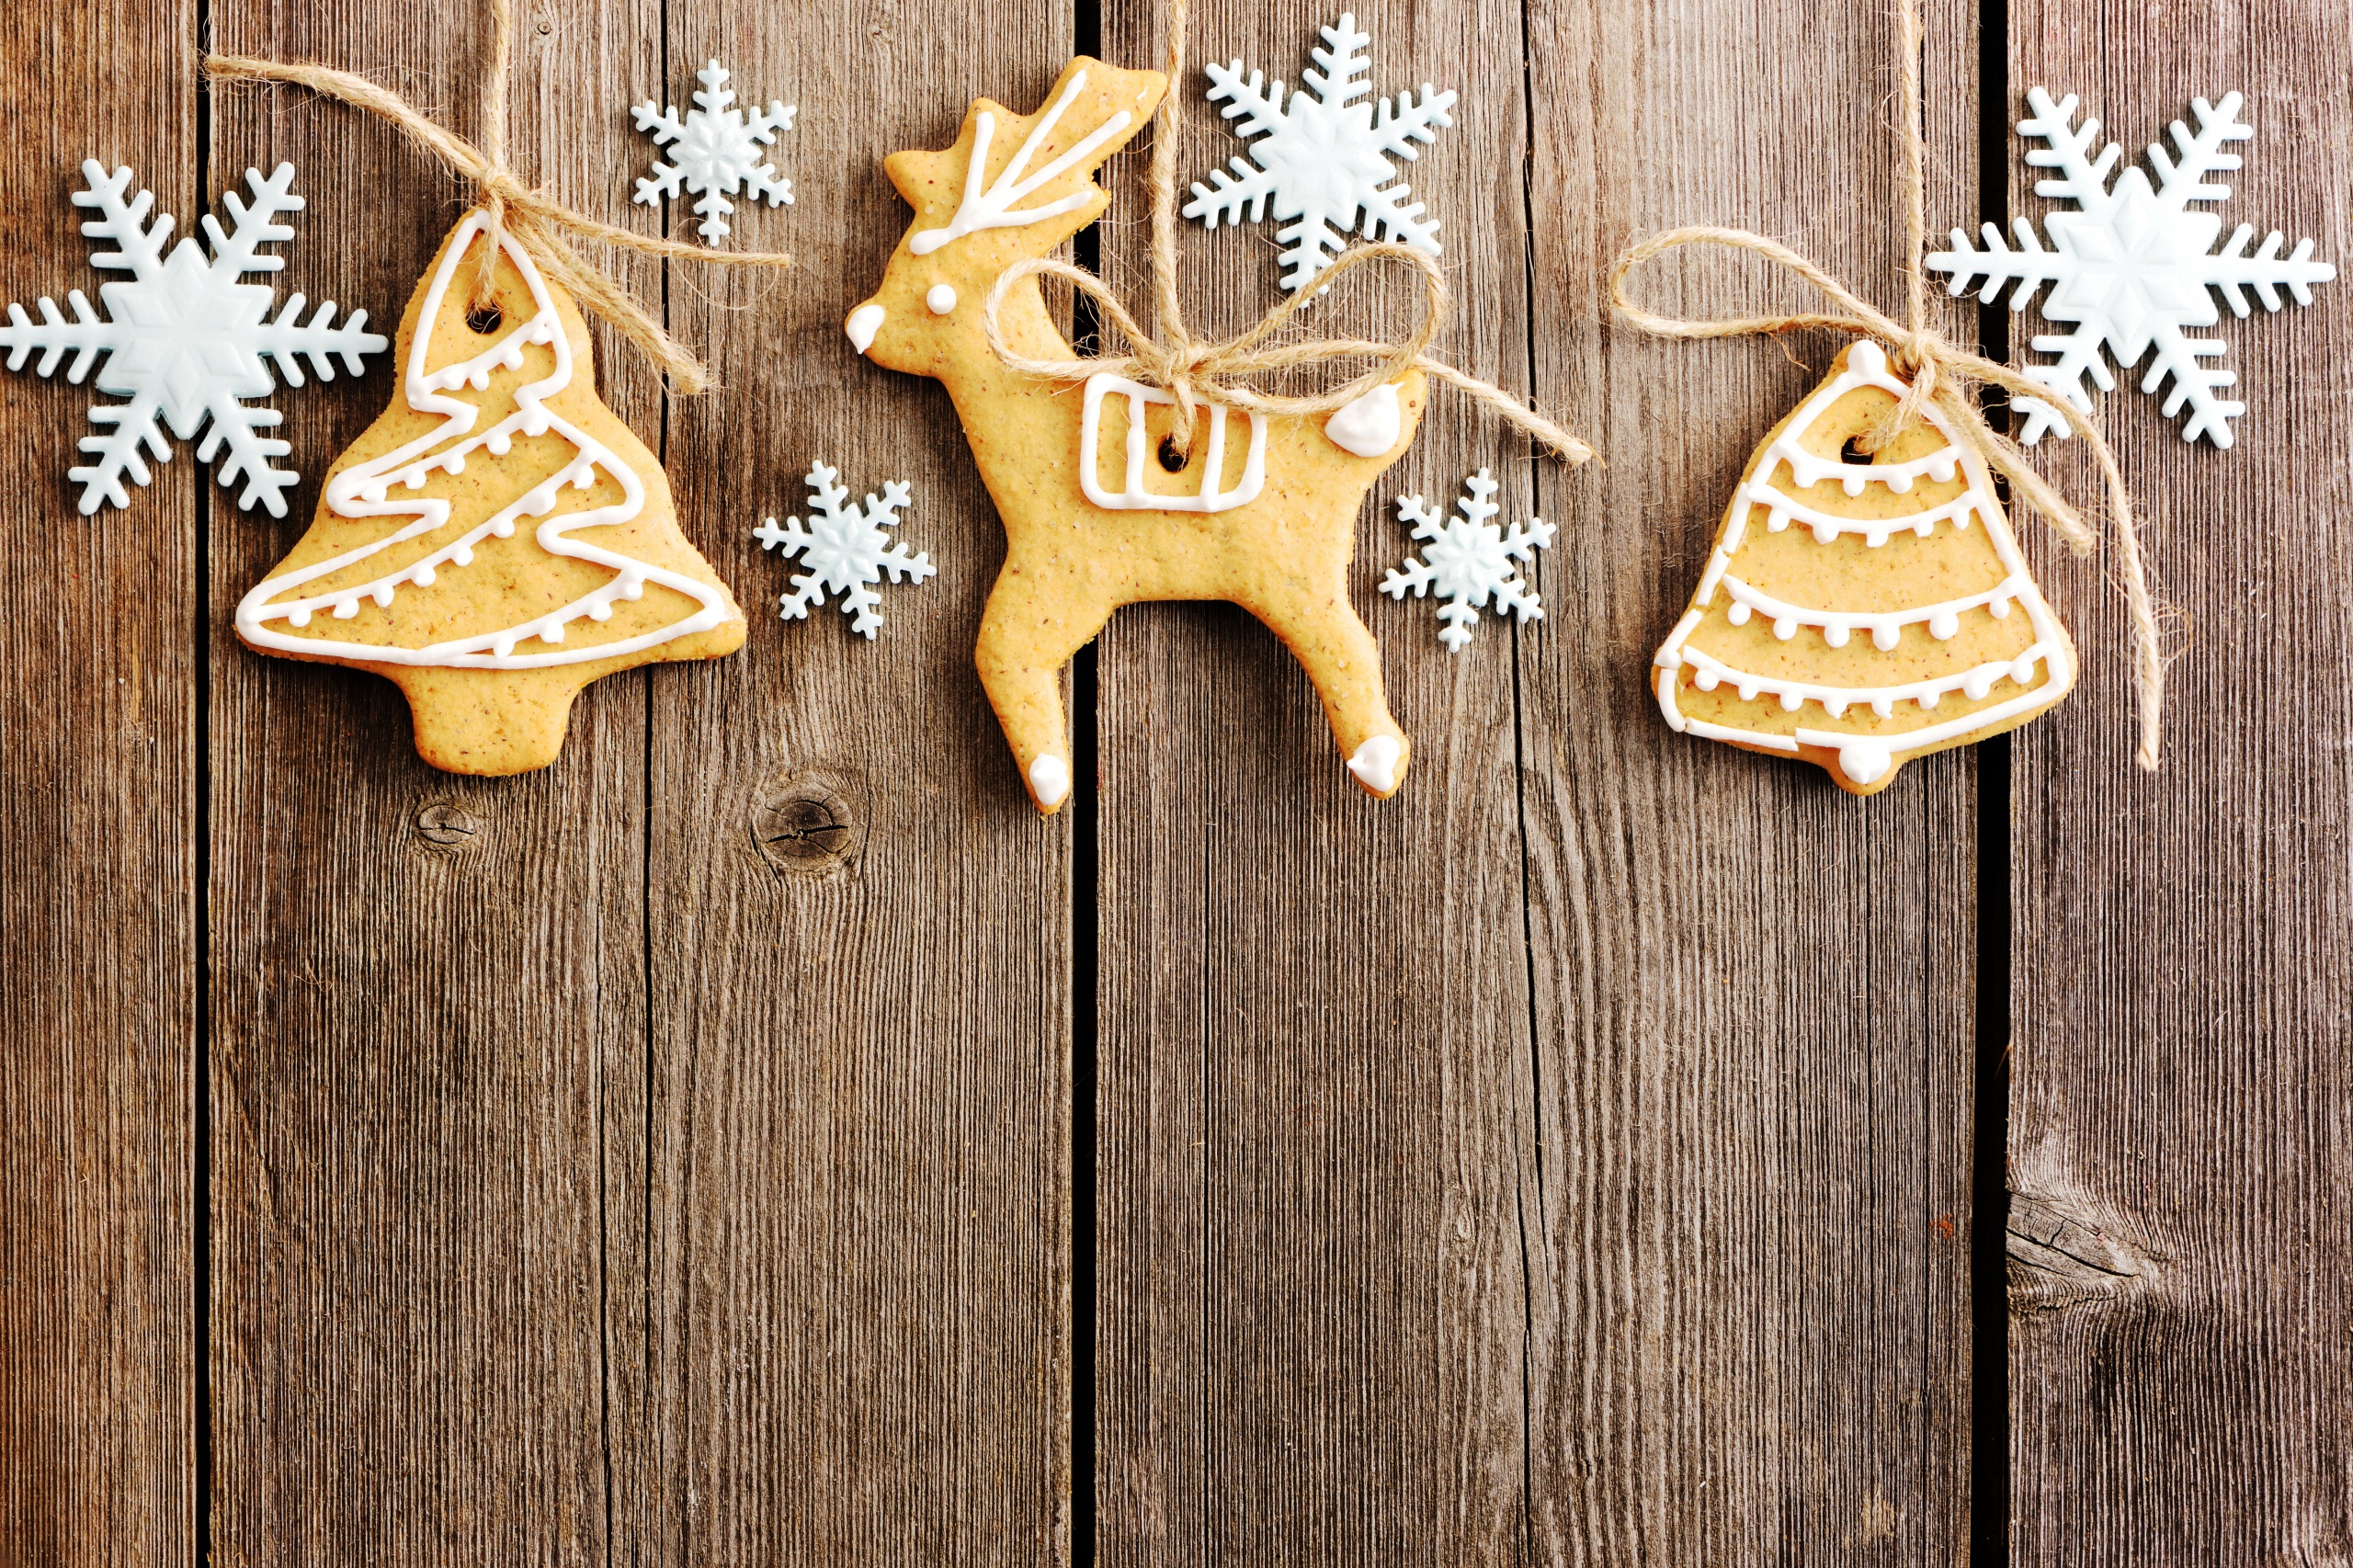 Скачать обои бесплатно Печенье, Рождество, Древесина, Имбирный Пряник, Праздничные картинка на рабочий стол ПК